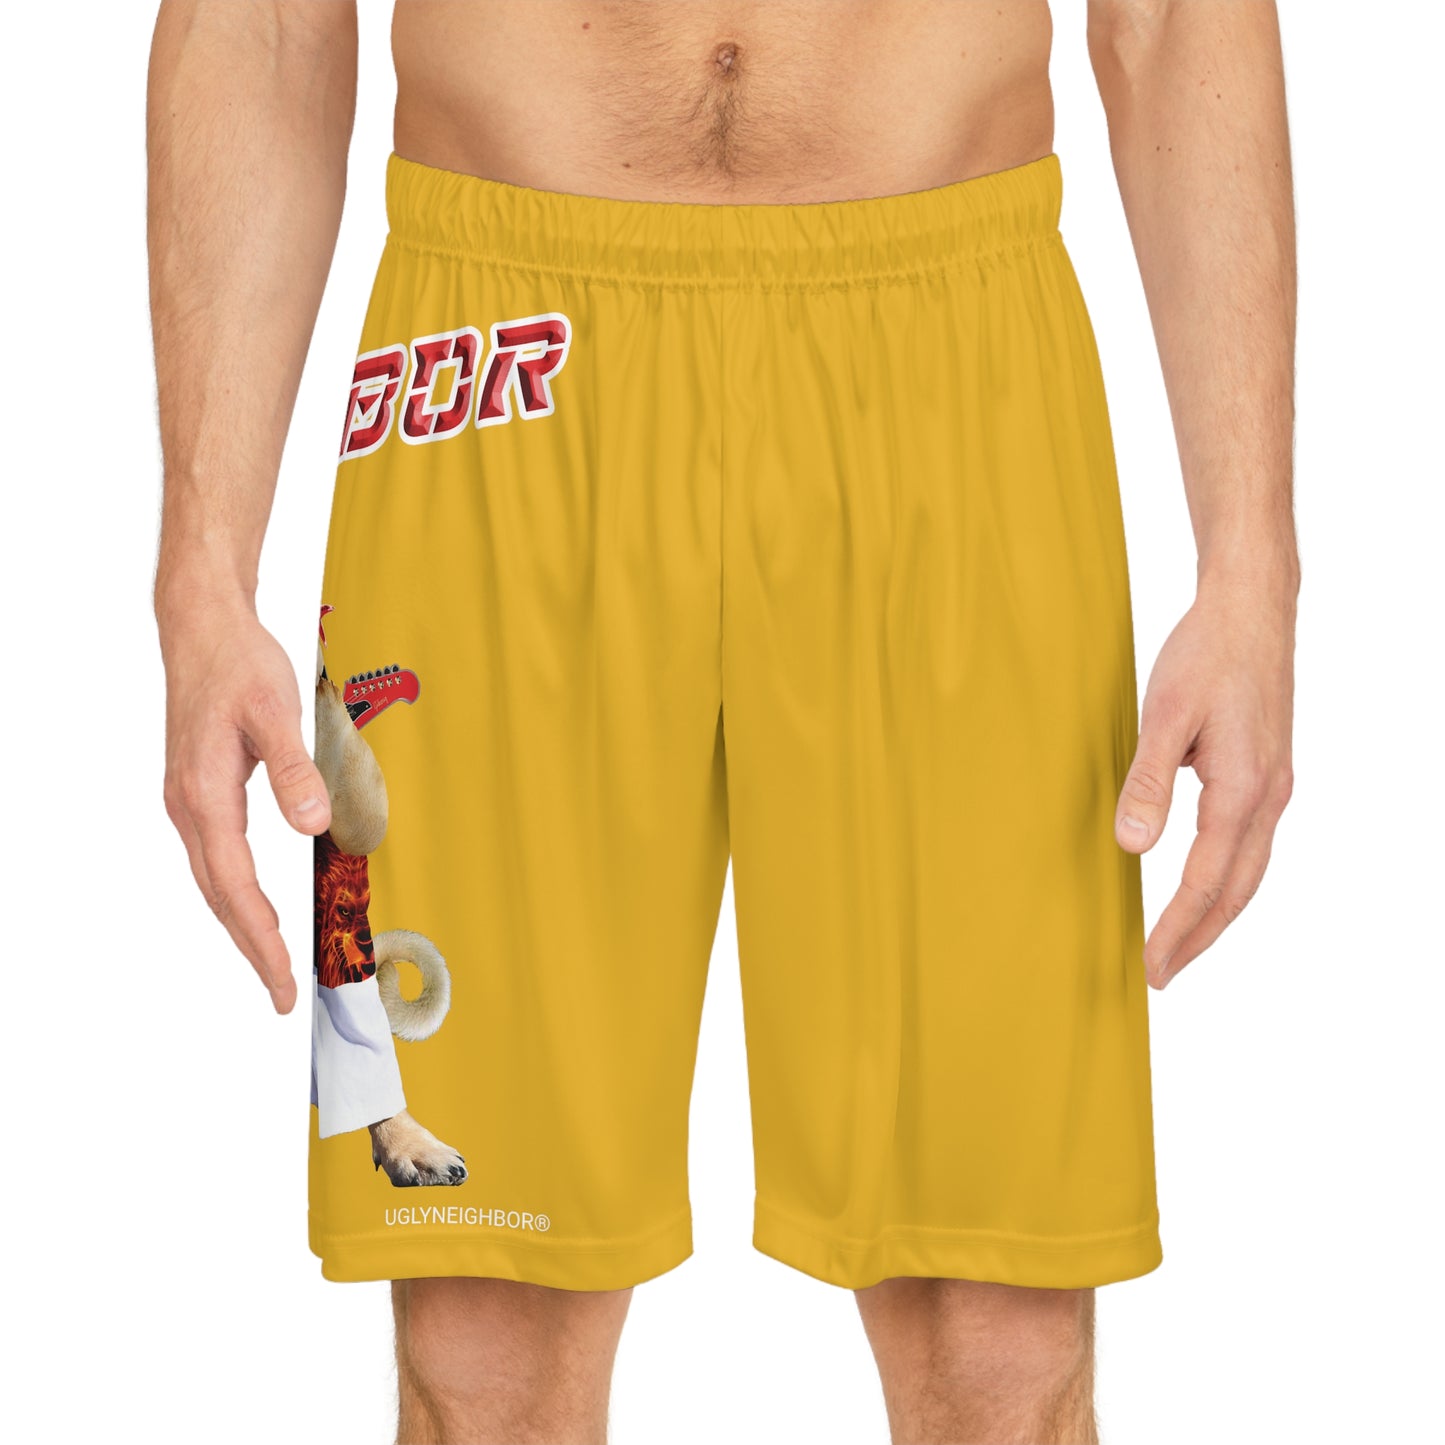 Ugly Neighbor BougieBooty Baller Shorts - Yellow